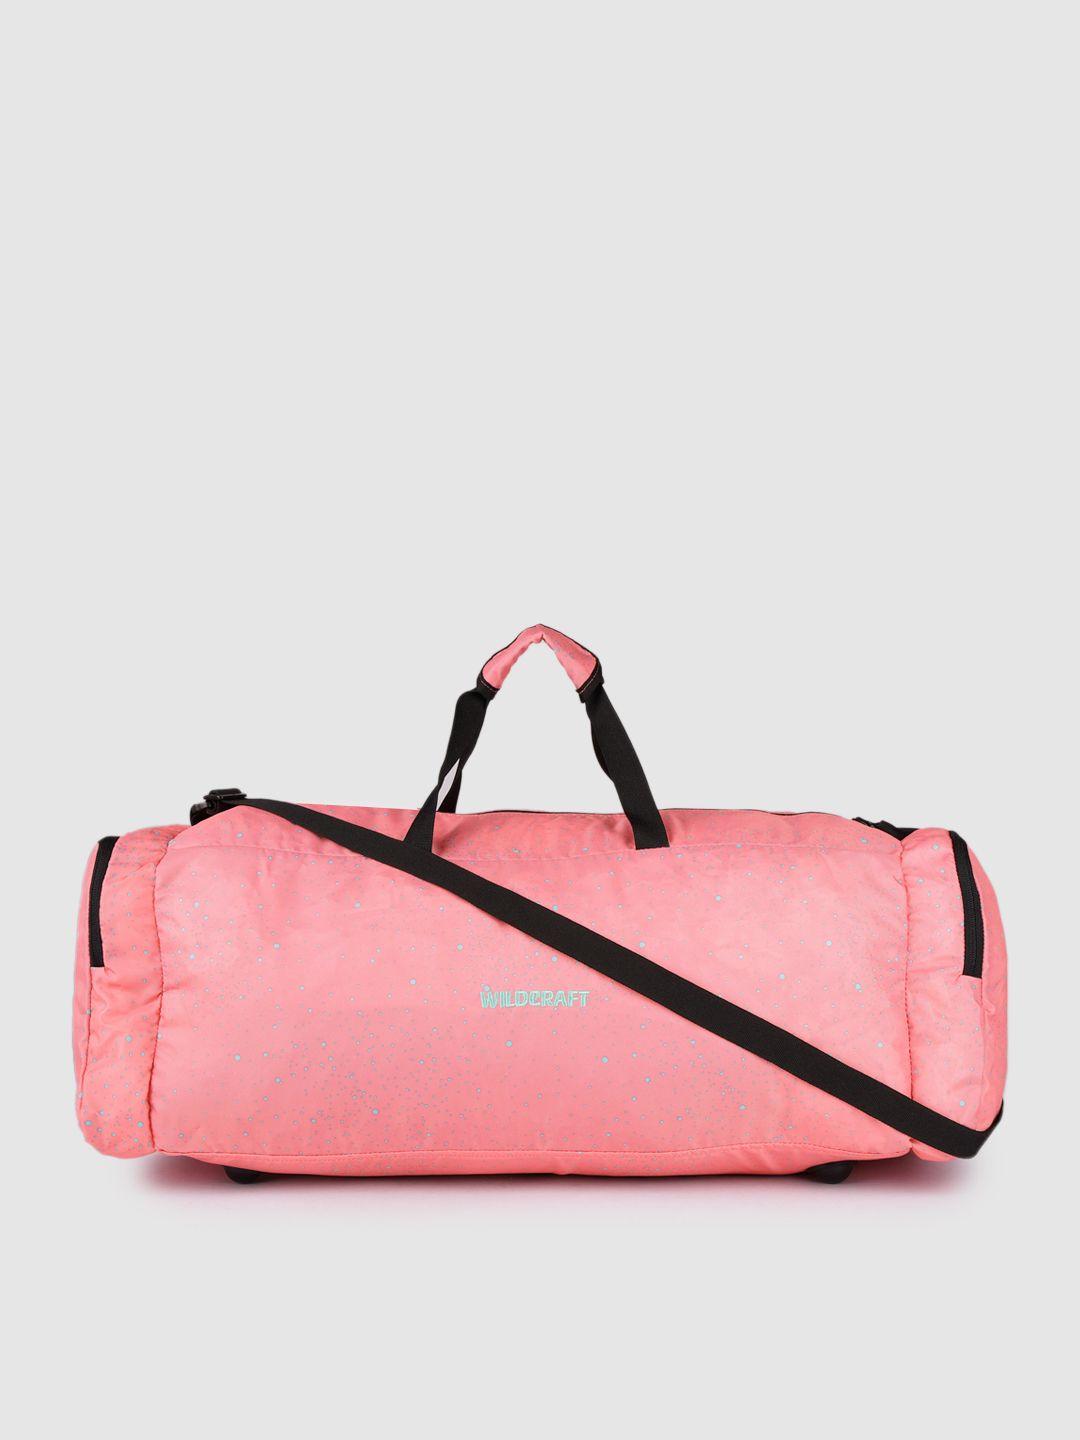 wildcraft unisex pink printed power duffel bag